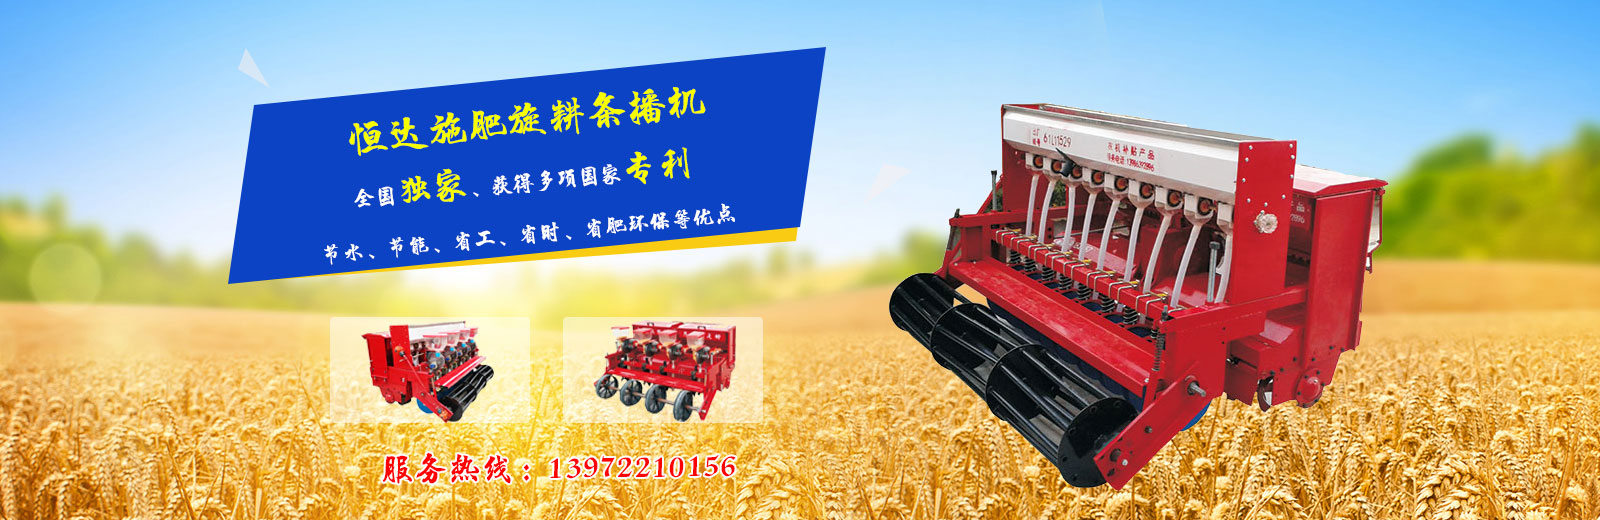 旋耕机是与拖拉机配套完成耕耙作业的耕耘机械